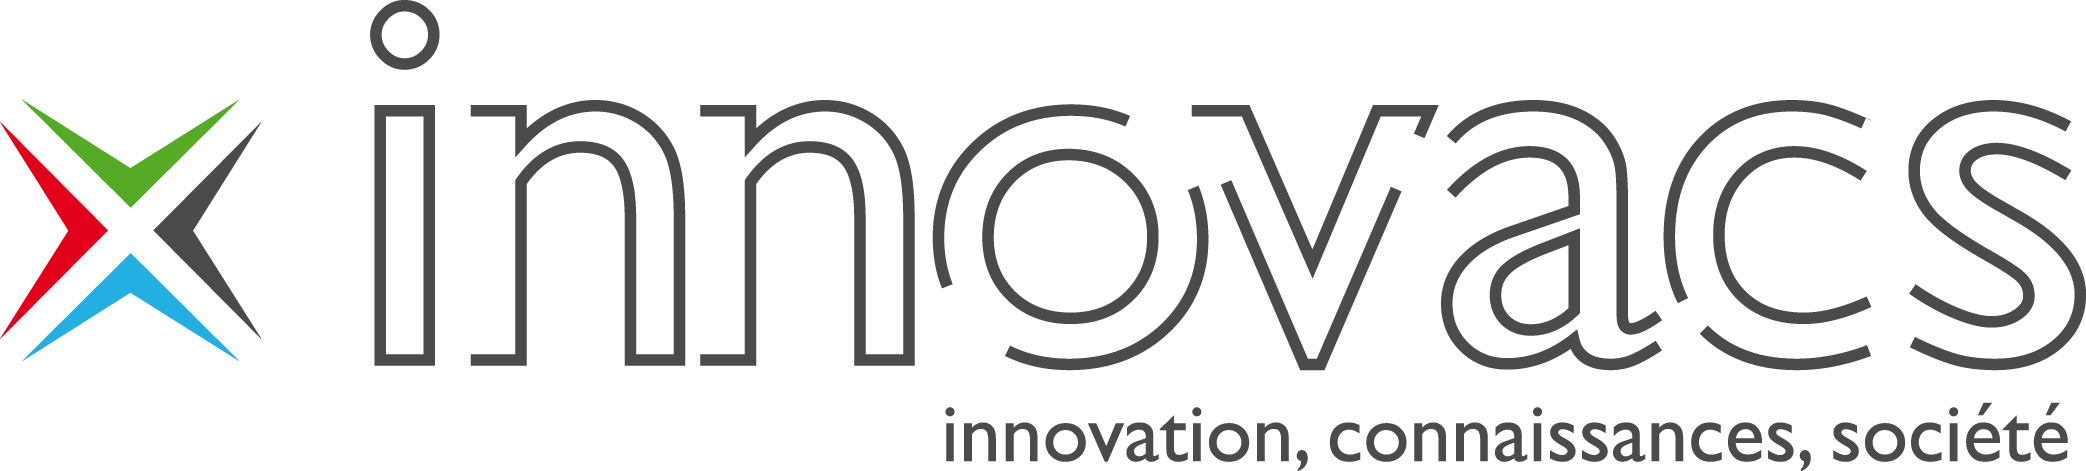 innovacs_rvb.jpg